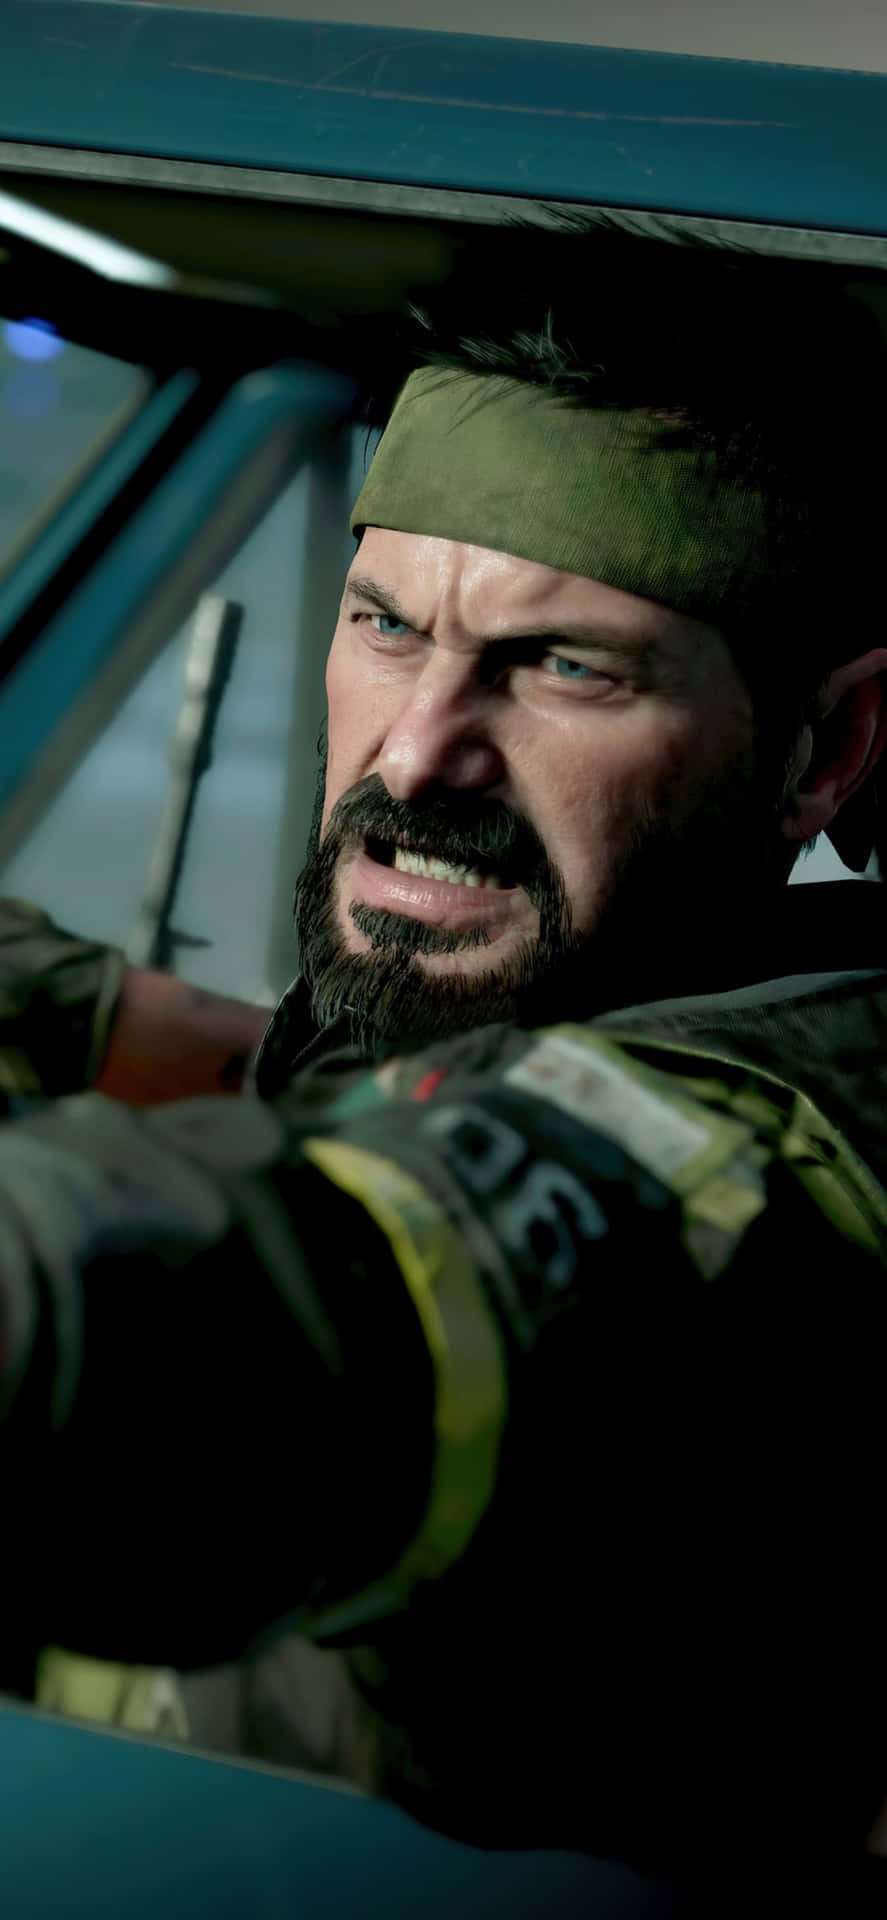 Iphonex Bakgrundsbild För Call Of Duty Black Ops Cold War, Med Frank Woods.